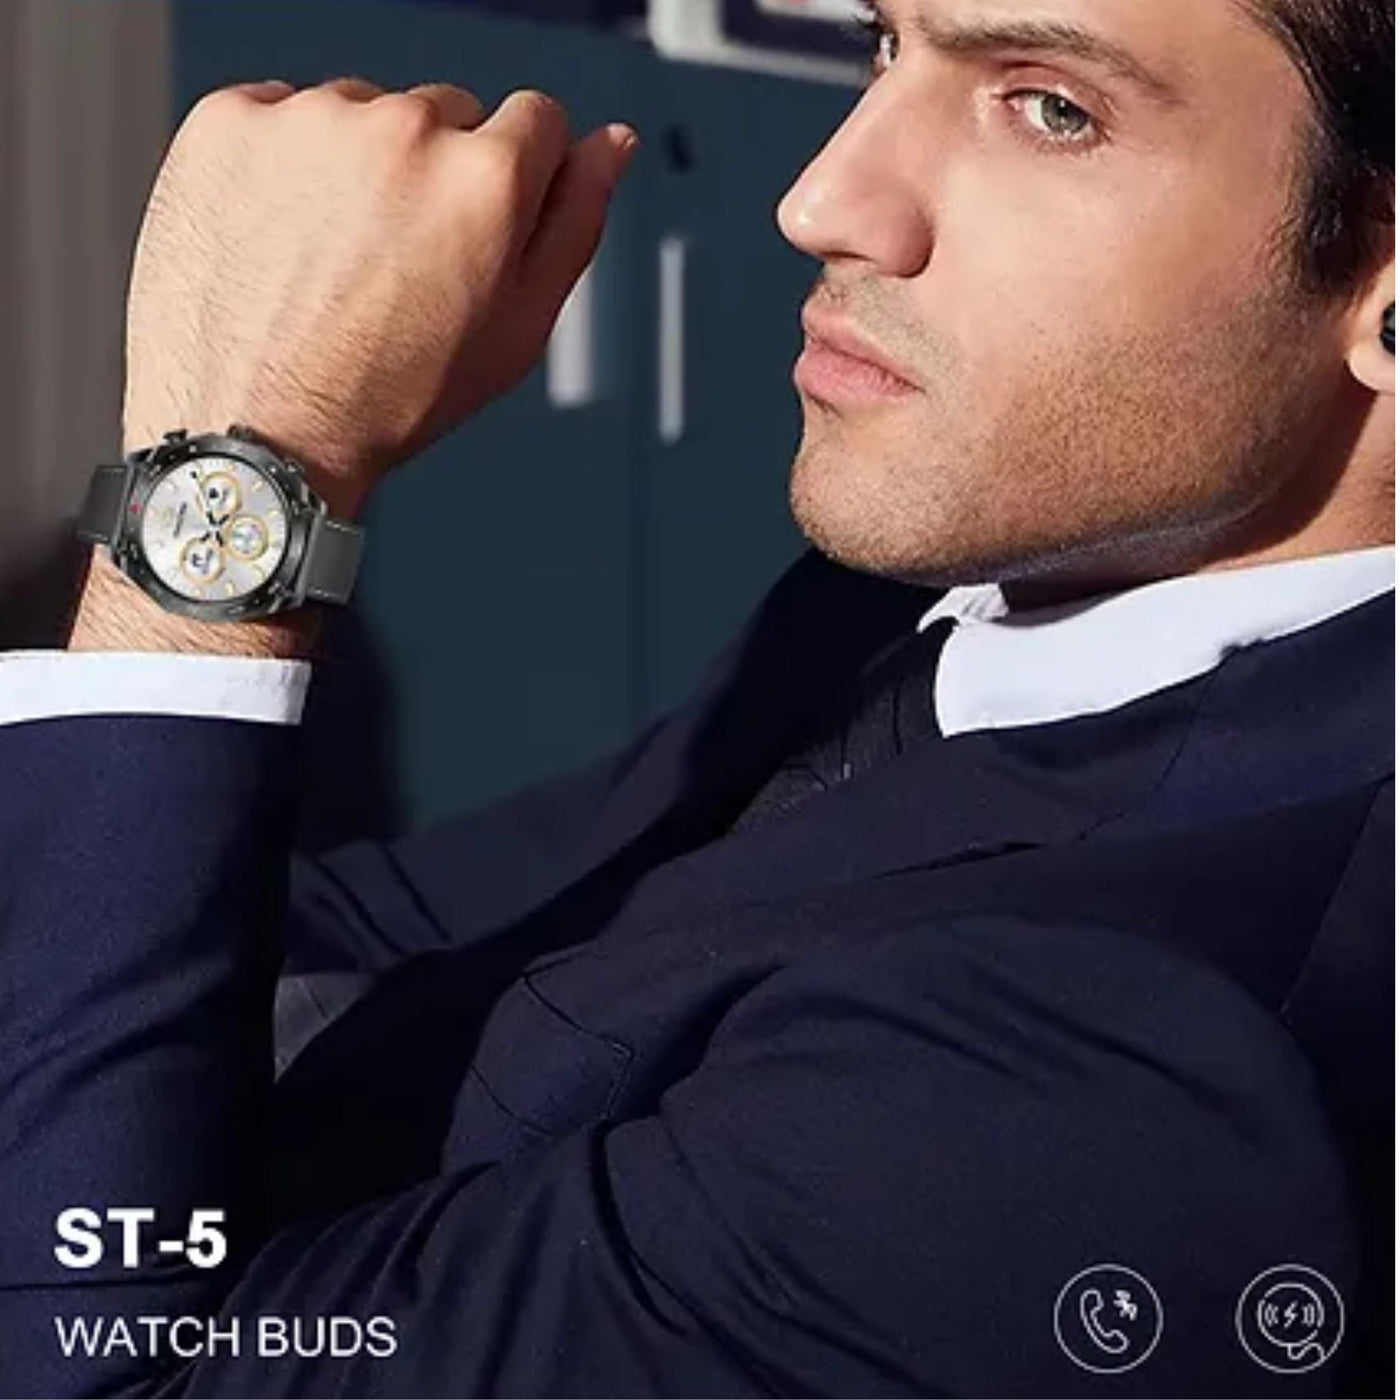 Premium ST-5 Watch Buds